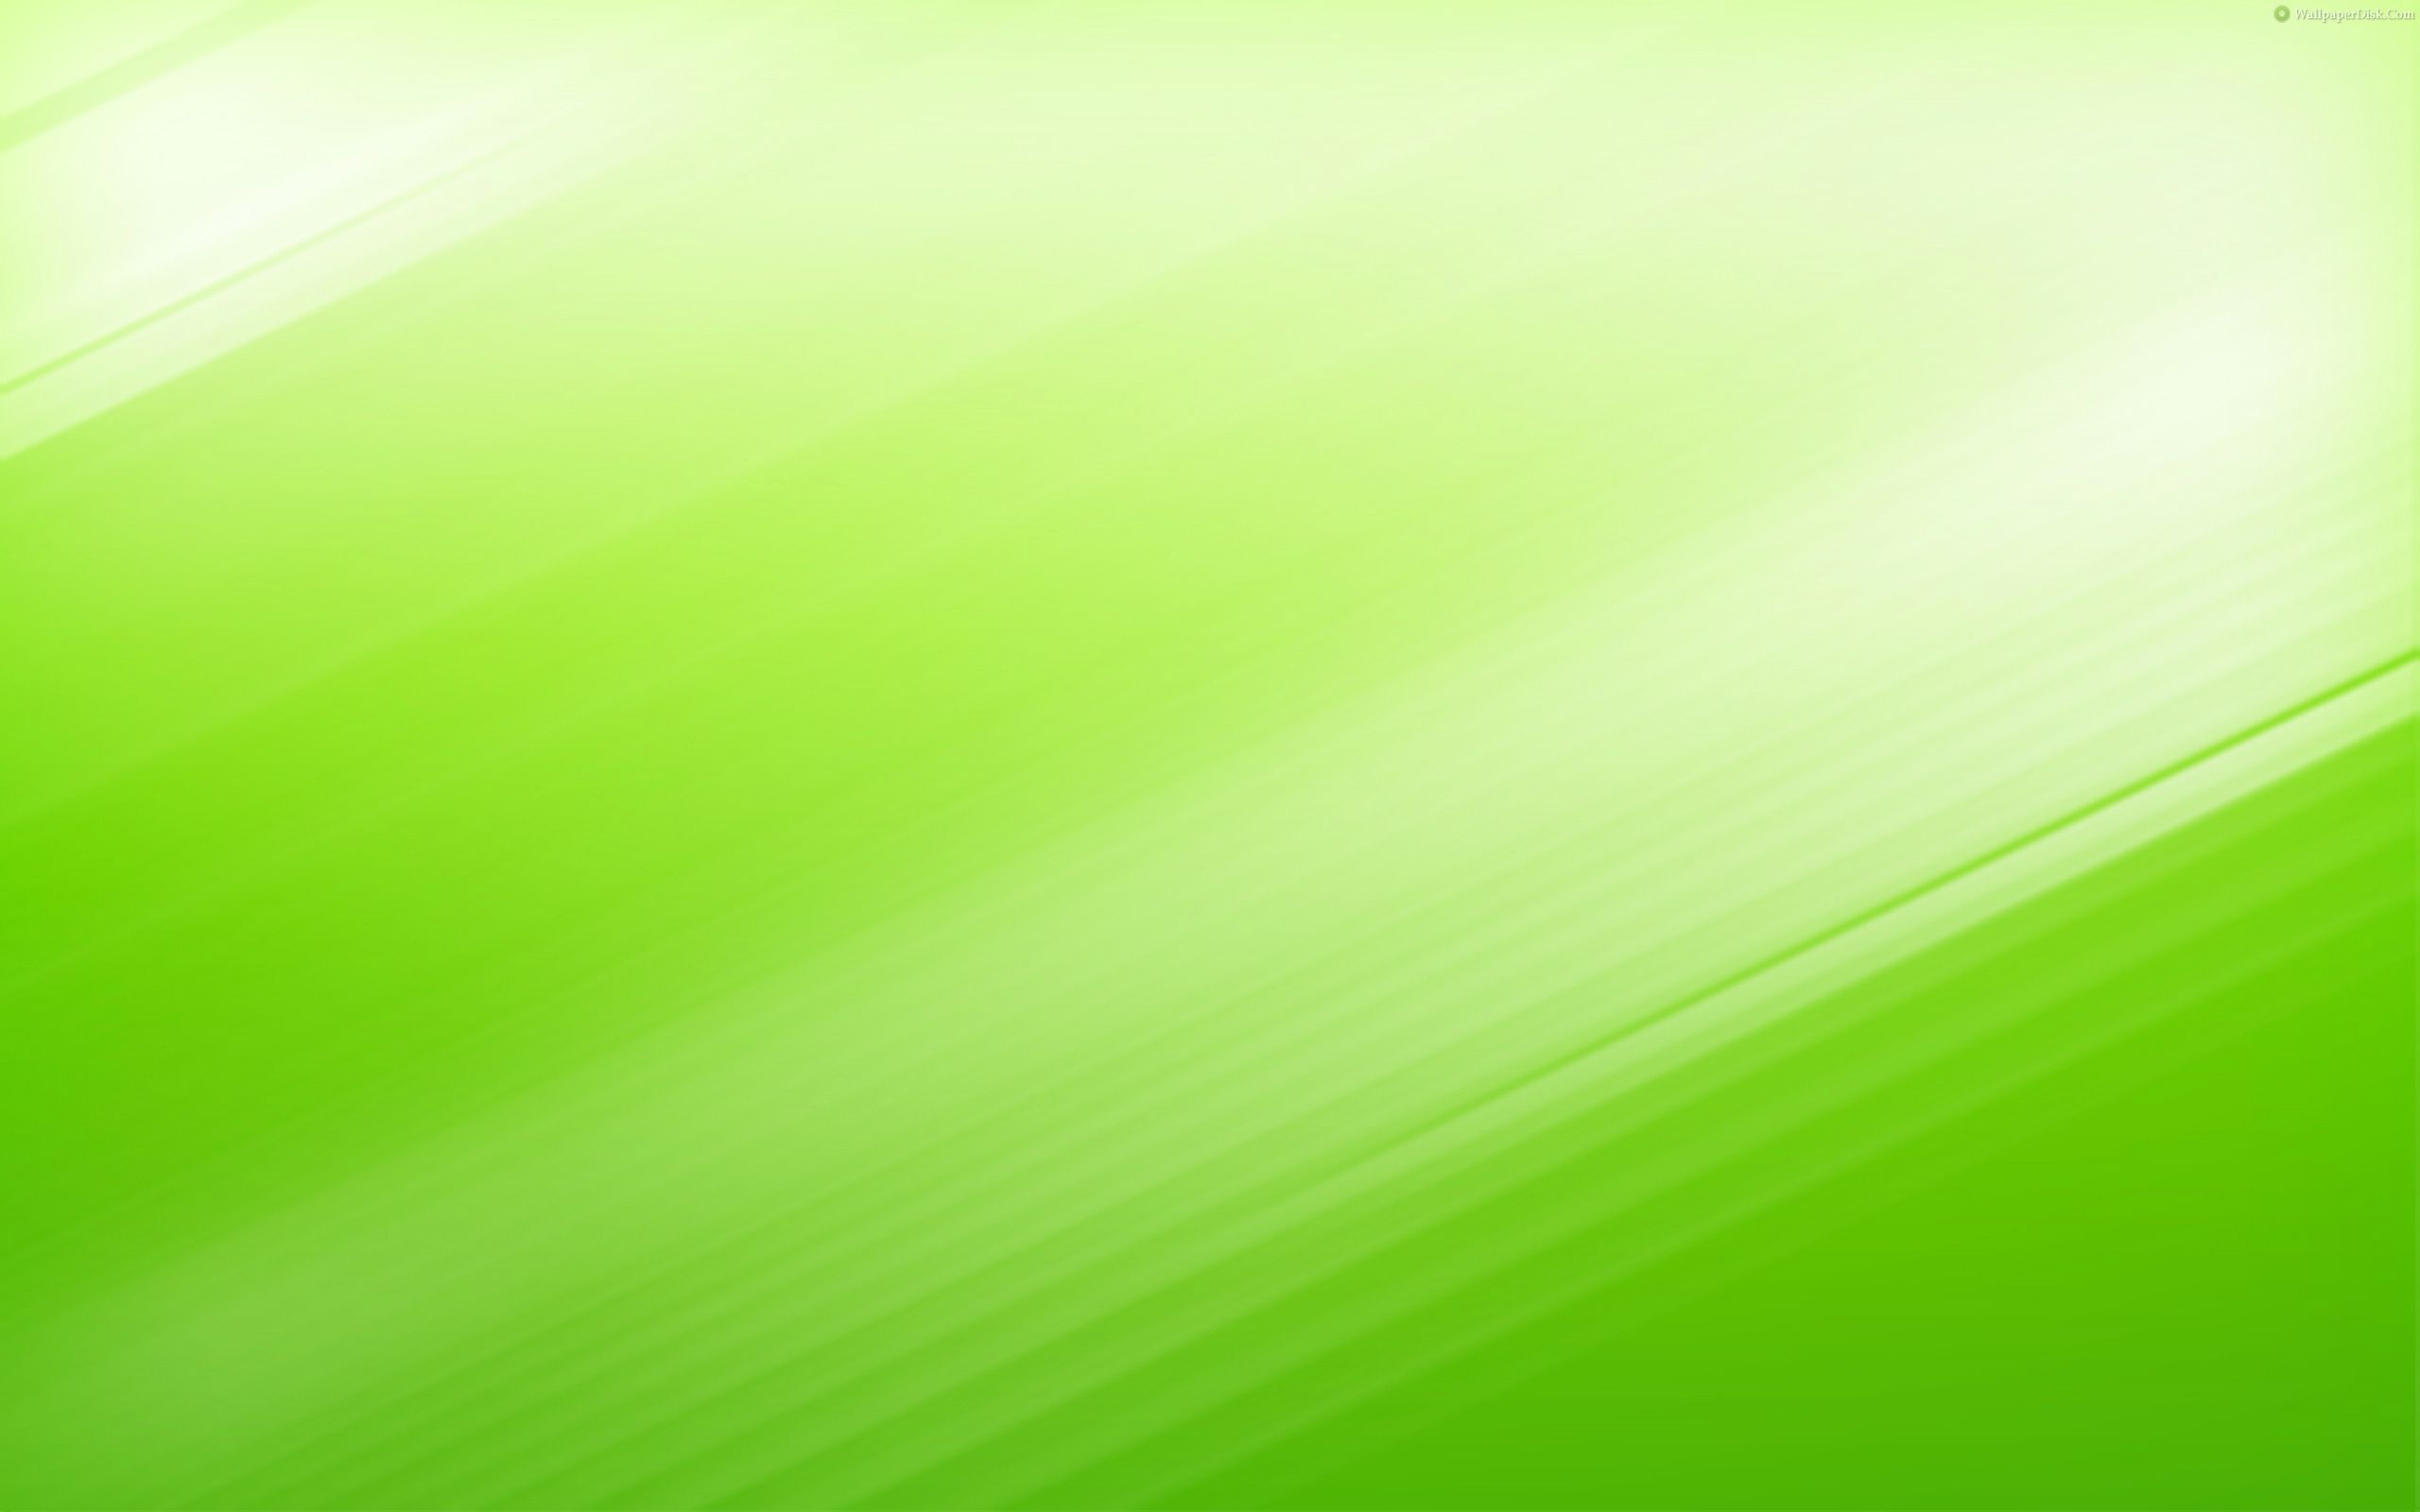 Bạn đang muốn có một hình nền màu xanh lá cây ấn tượng cho thiết bị của mình? Hãy tải ngay miễn phí bộ sưu tập Hình nền màu xanh lá cây 6084 HDWPro [2560x1600] từ chúng tôi. Chúng tôi cam kết đem đến cho bạn những hình ảnh chất lượng cao nhất.